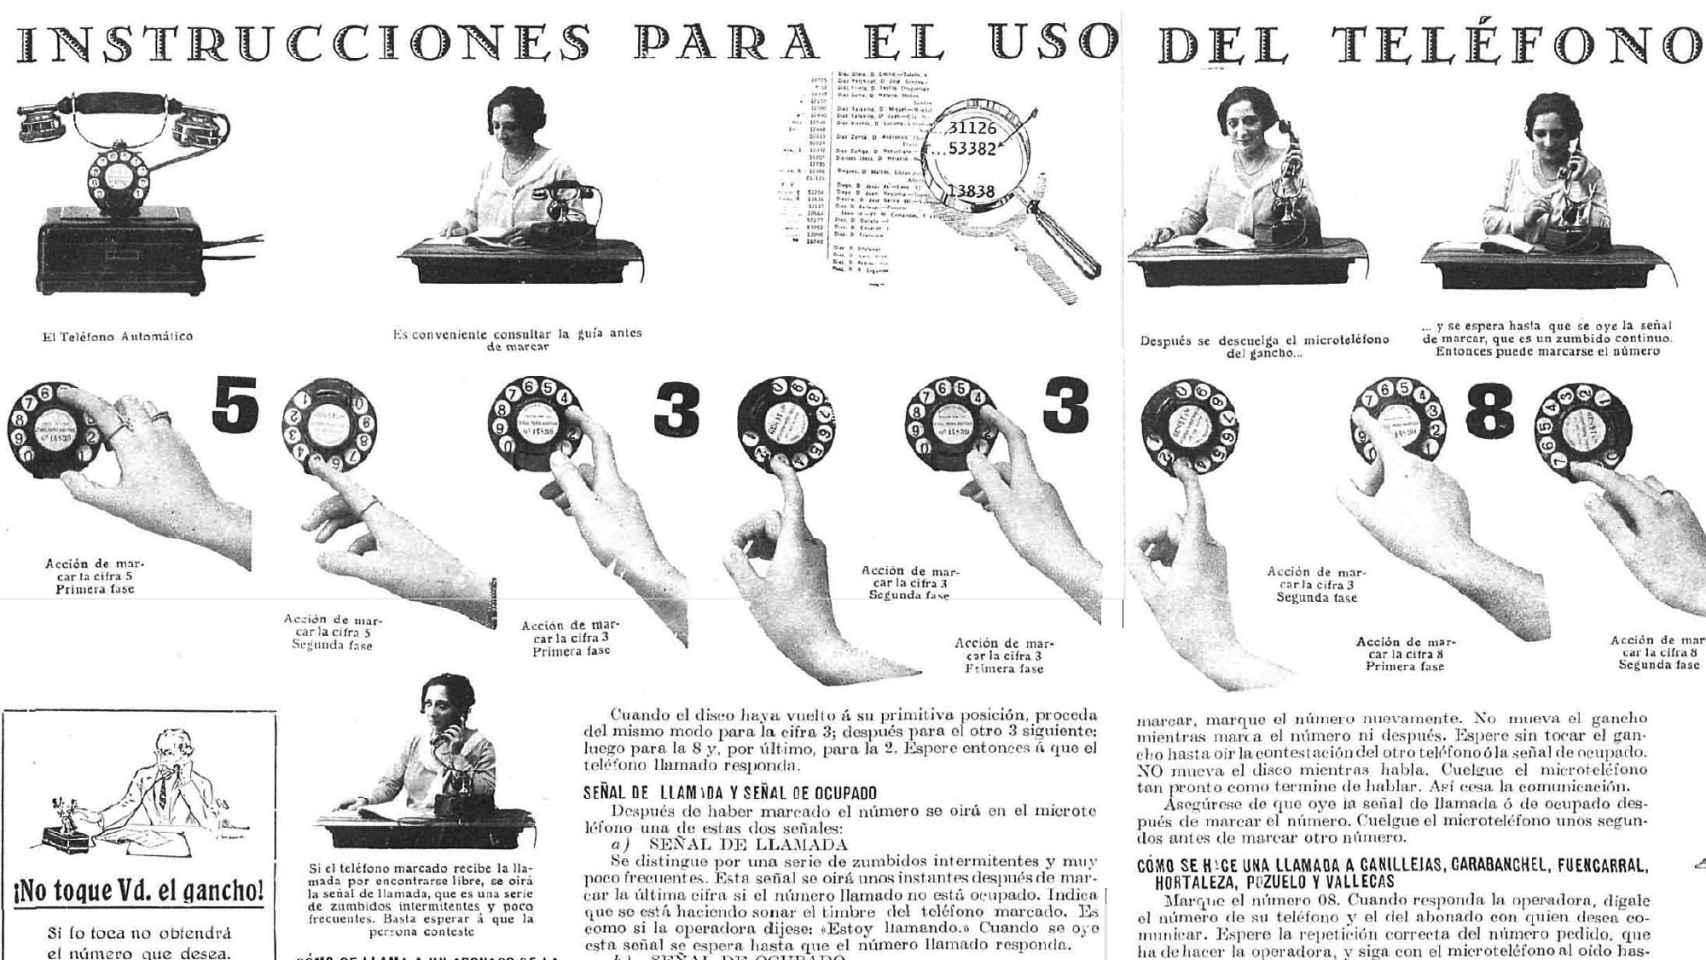 Detalle de las intrucciones para telefonear aparecidas en Nuevo Mundo, el 3 de diciembre de 1926.